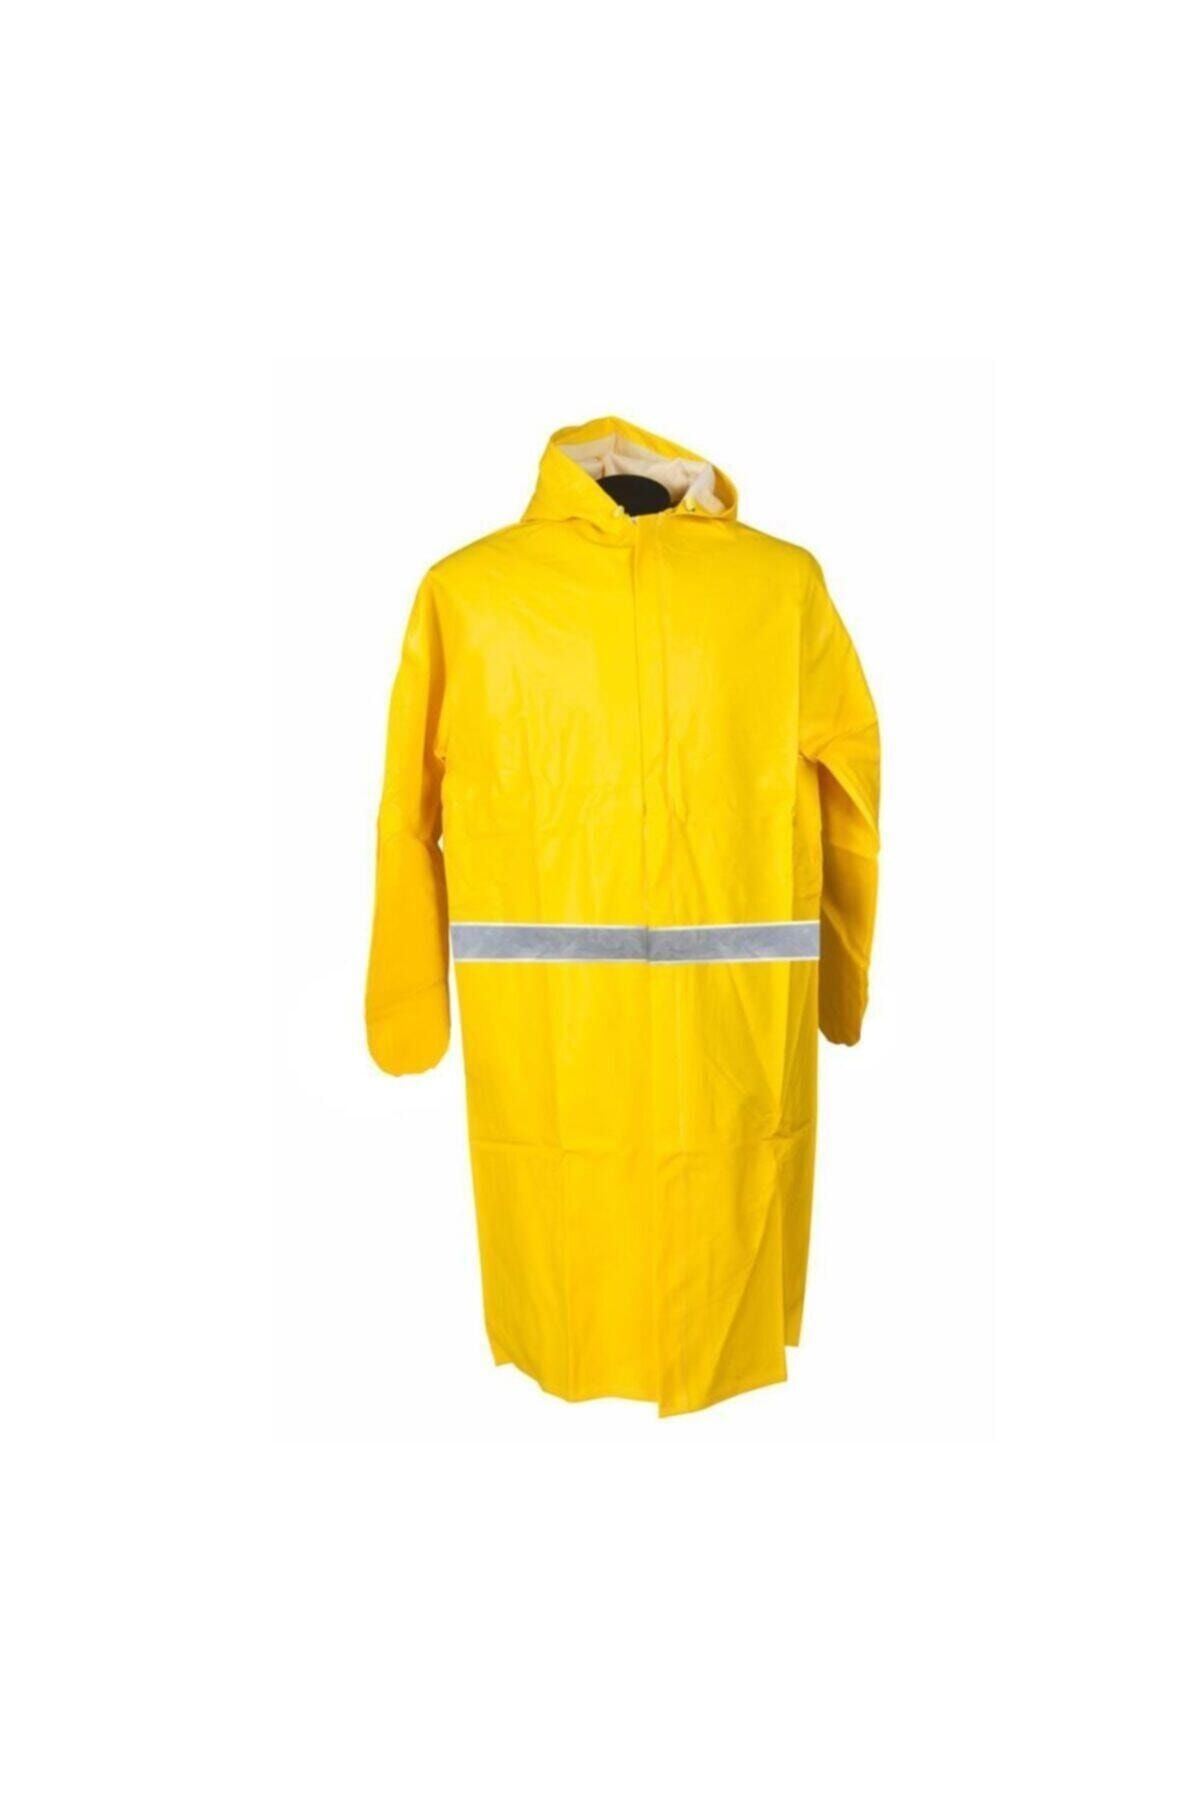 DrMia Pvc Yağmurluk Reflektörlü Iş Güvenlik Yağmurluk Sarı